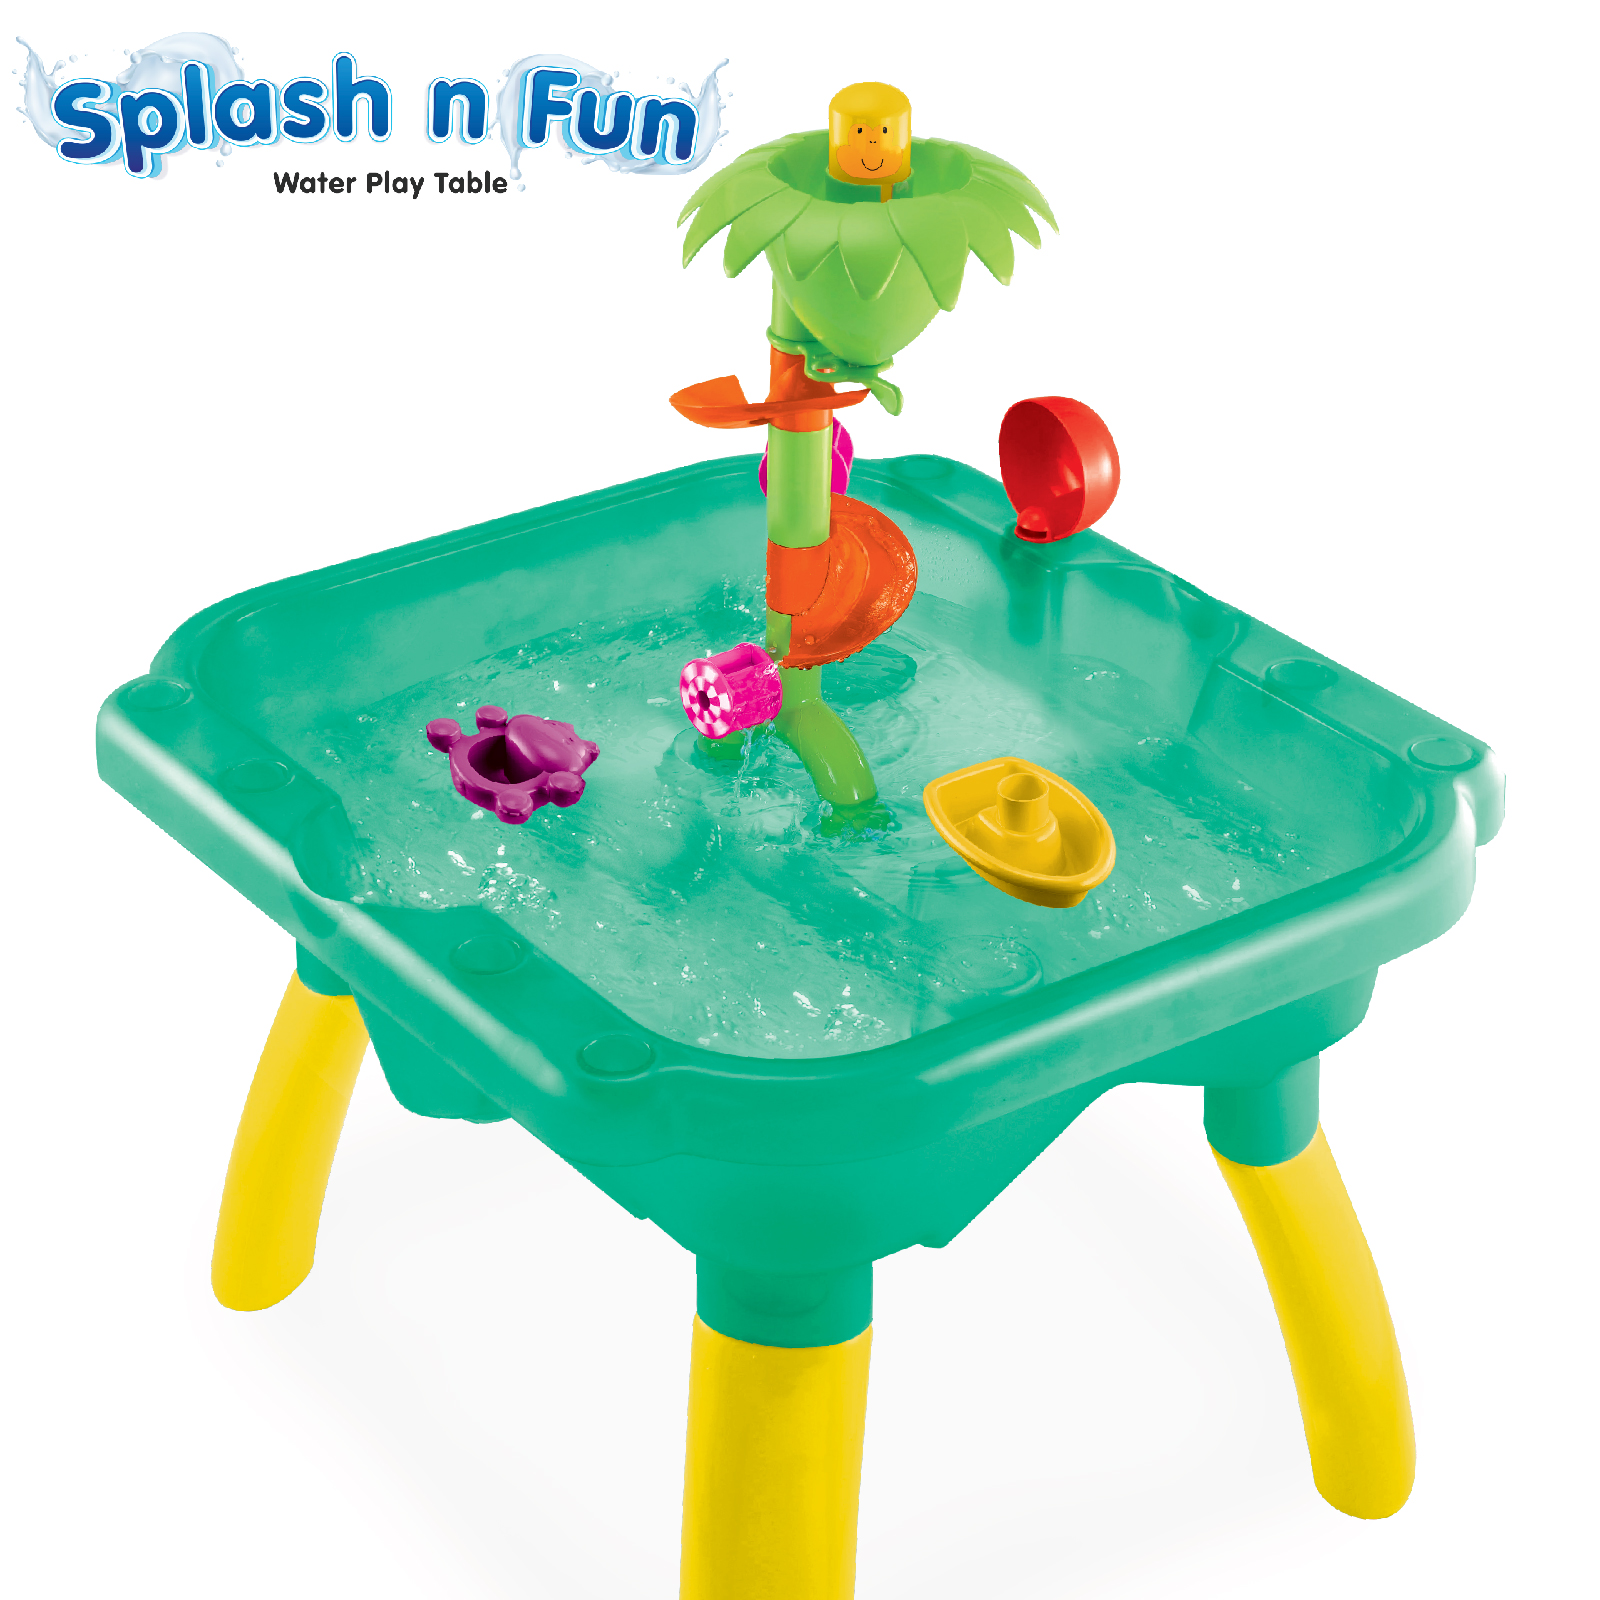 Funskool Giggles Splash n fun Water Play Table